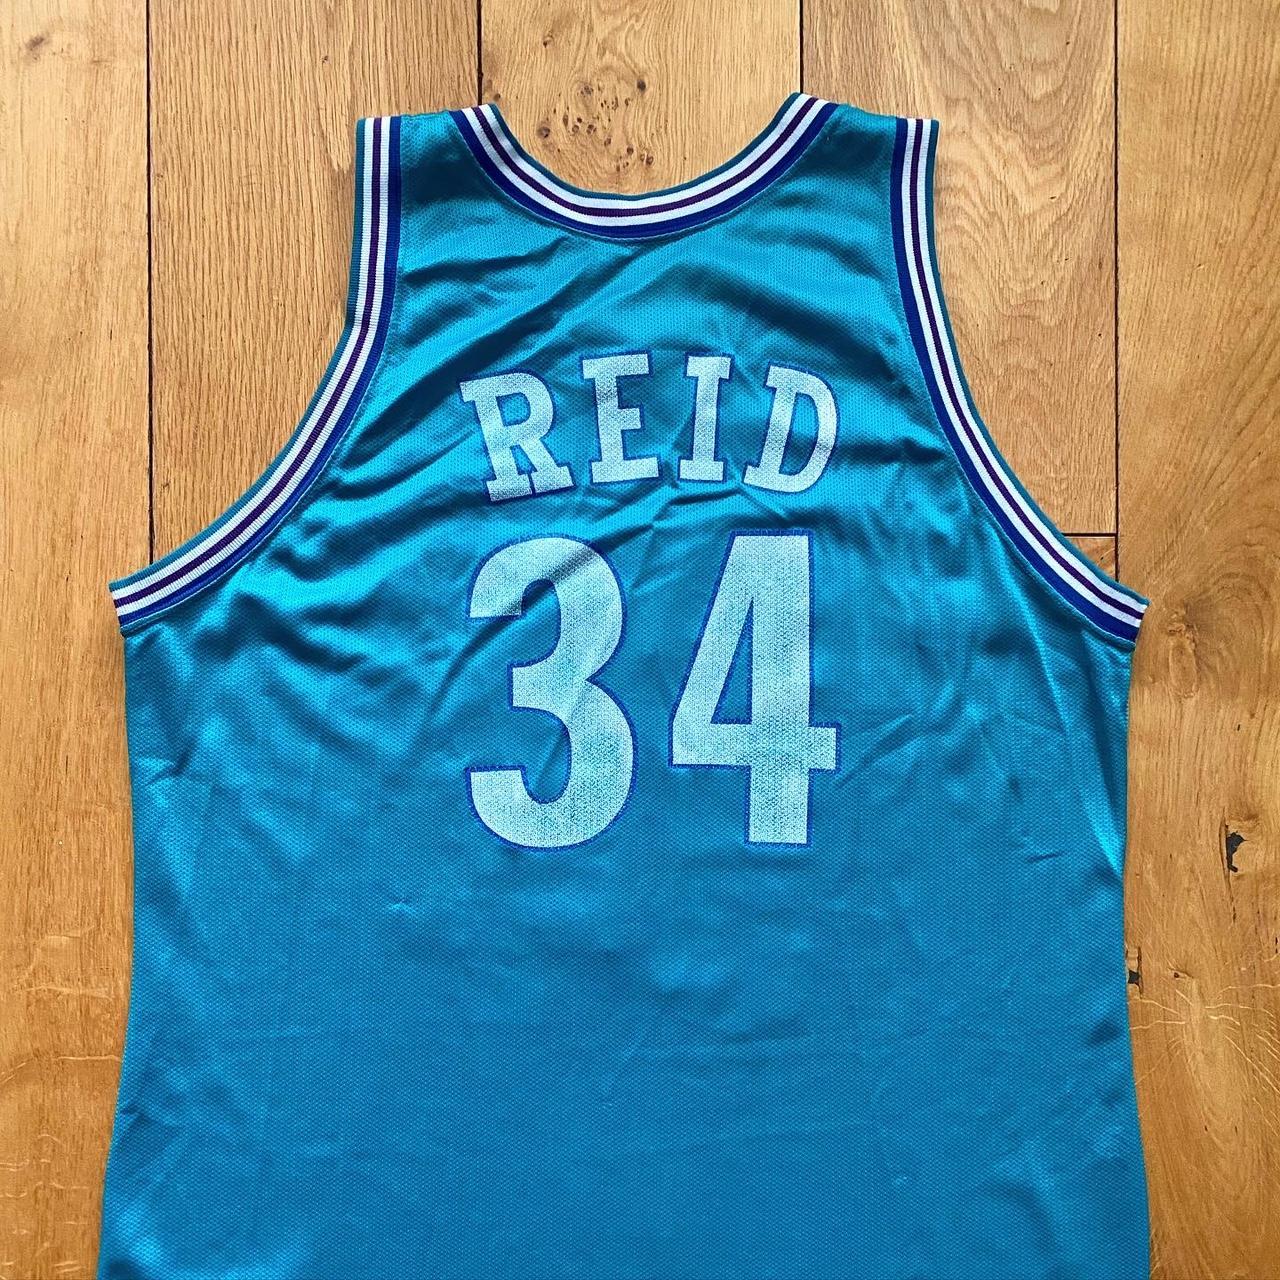 J.R. Reid, Charlotte Hornets, 1992/93 Away - Depop